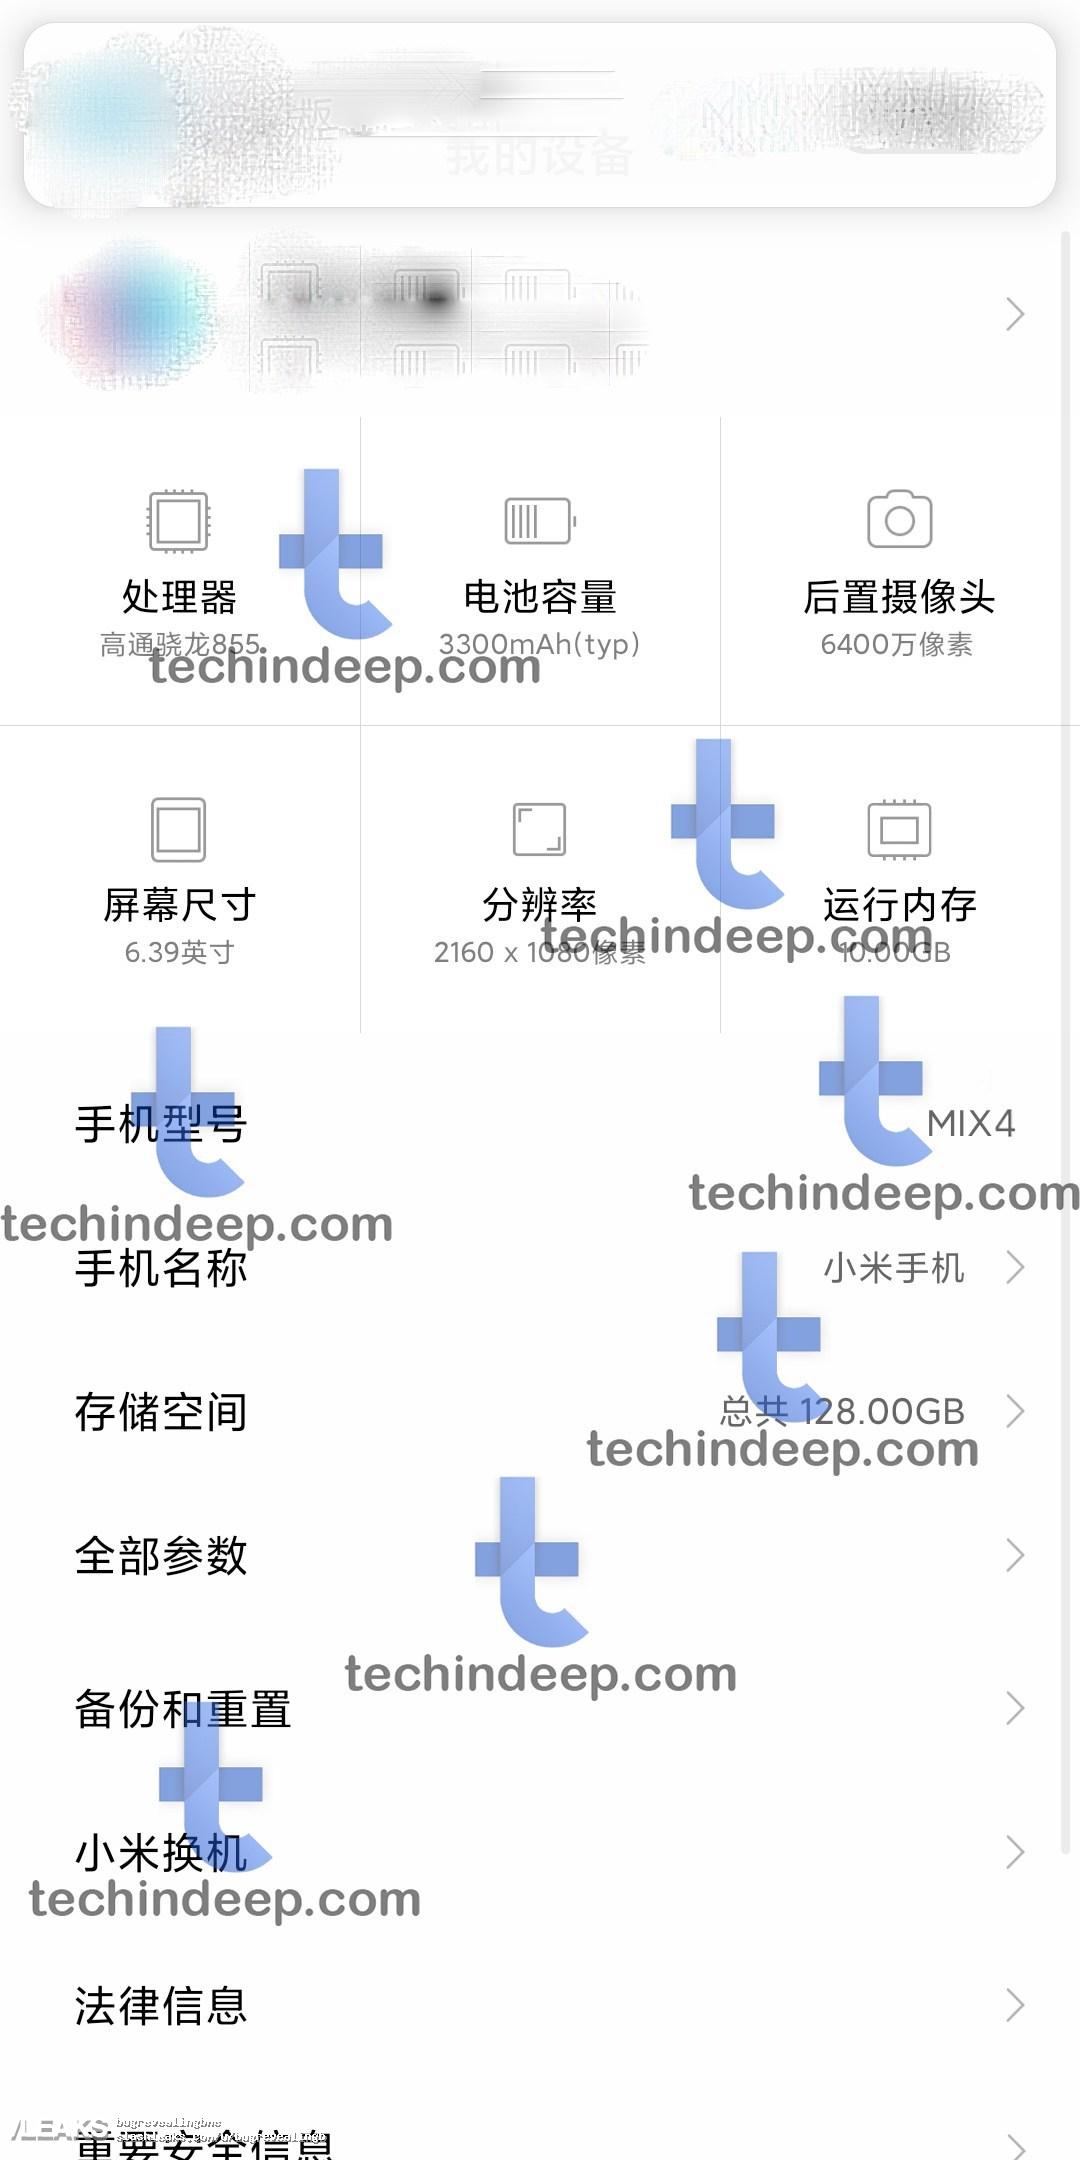 img läckte Xiaomi Mi Mix 4-specifikationerna i användargränssnittet